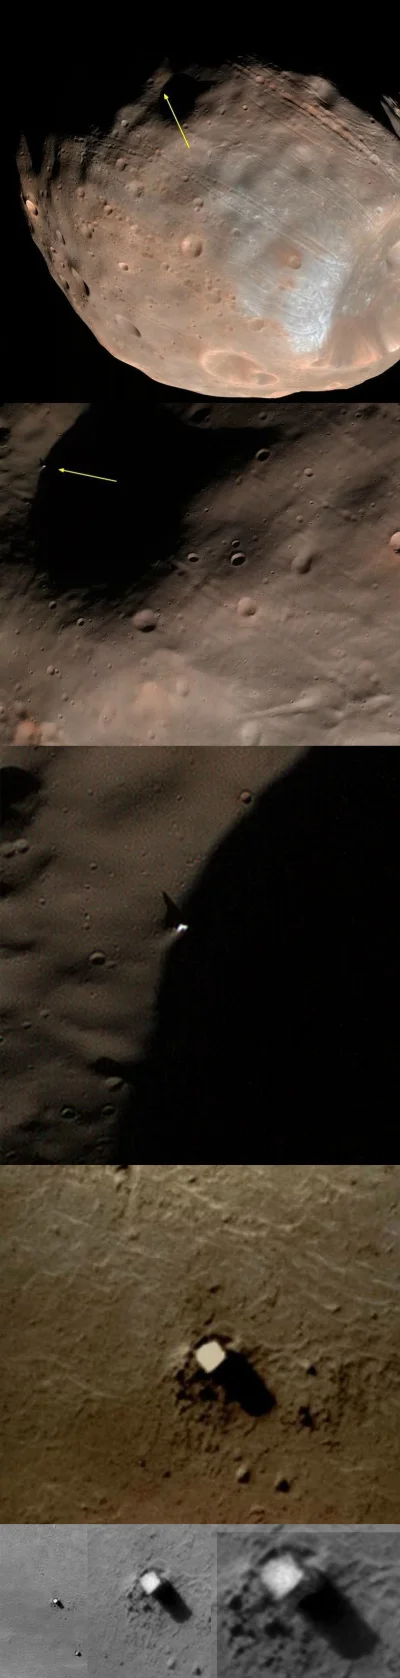 L.....s - #kosmos #mars #phobos #ciekawostki 



Monolit na Phobosie, księżycu Marsa....